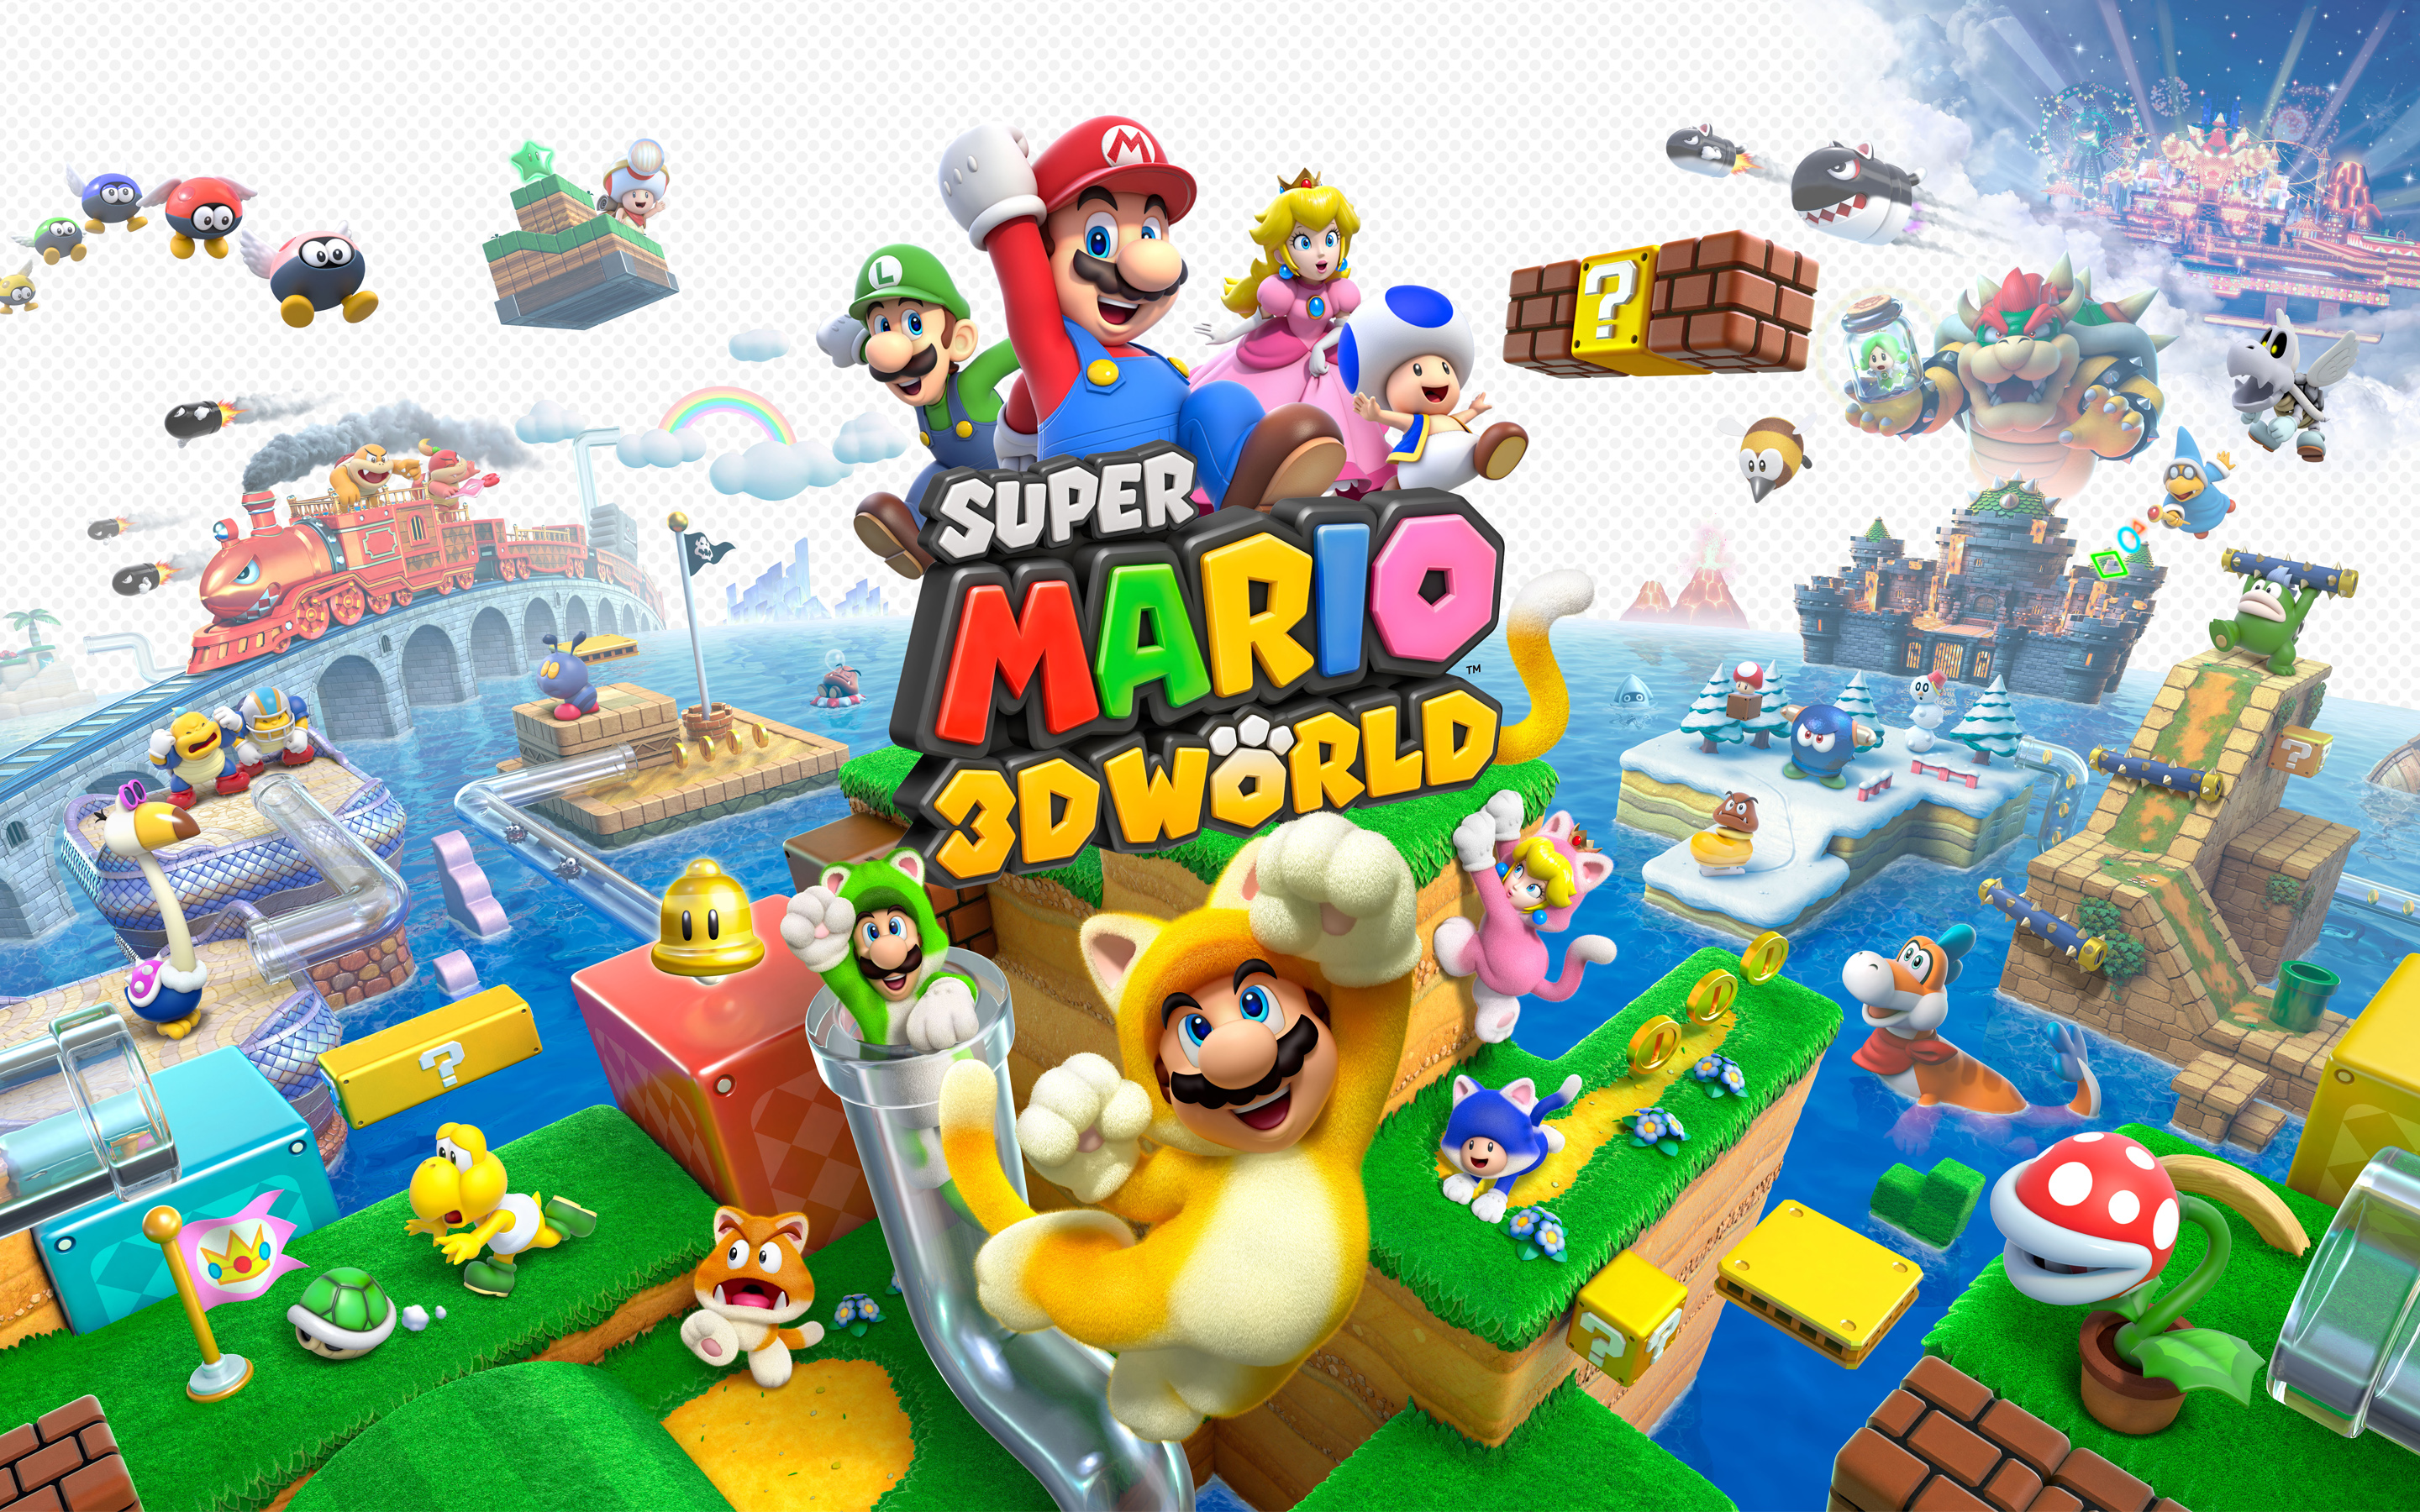 Những bức ảnh nền của Super Mario 3D World được thiết kế tinh tế với màu sắc tươi sáng và rực rỡ. Được làm bằng công nghệ cao, chúng sẽ đem đến cho bạn cảm giác mới lạ khi trang trí cho desktop của bạn. Hãy đến và khám phá những hình ảnh độc đáo của Super Mario 3D World ngay!